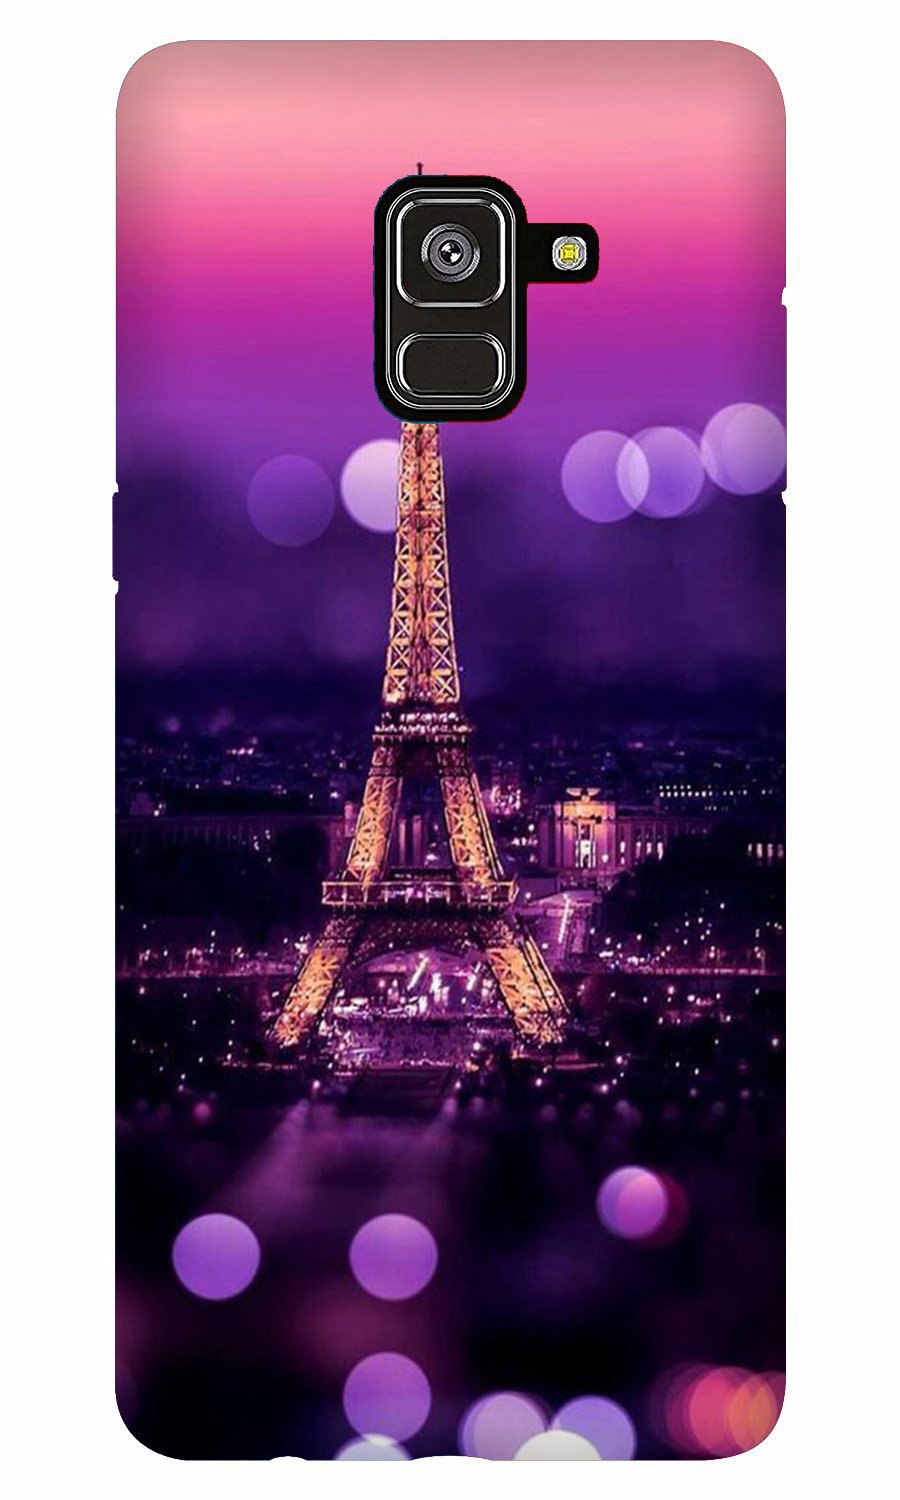 Eiffel Tower Case for Galaxy A5 (2018)